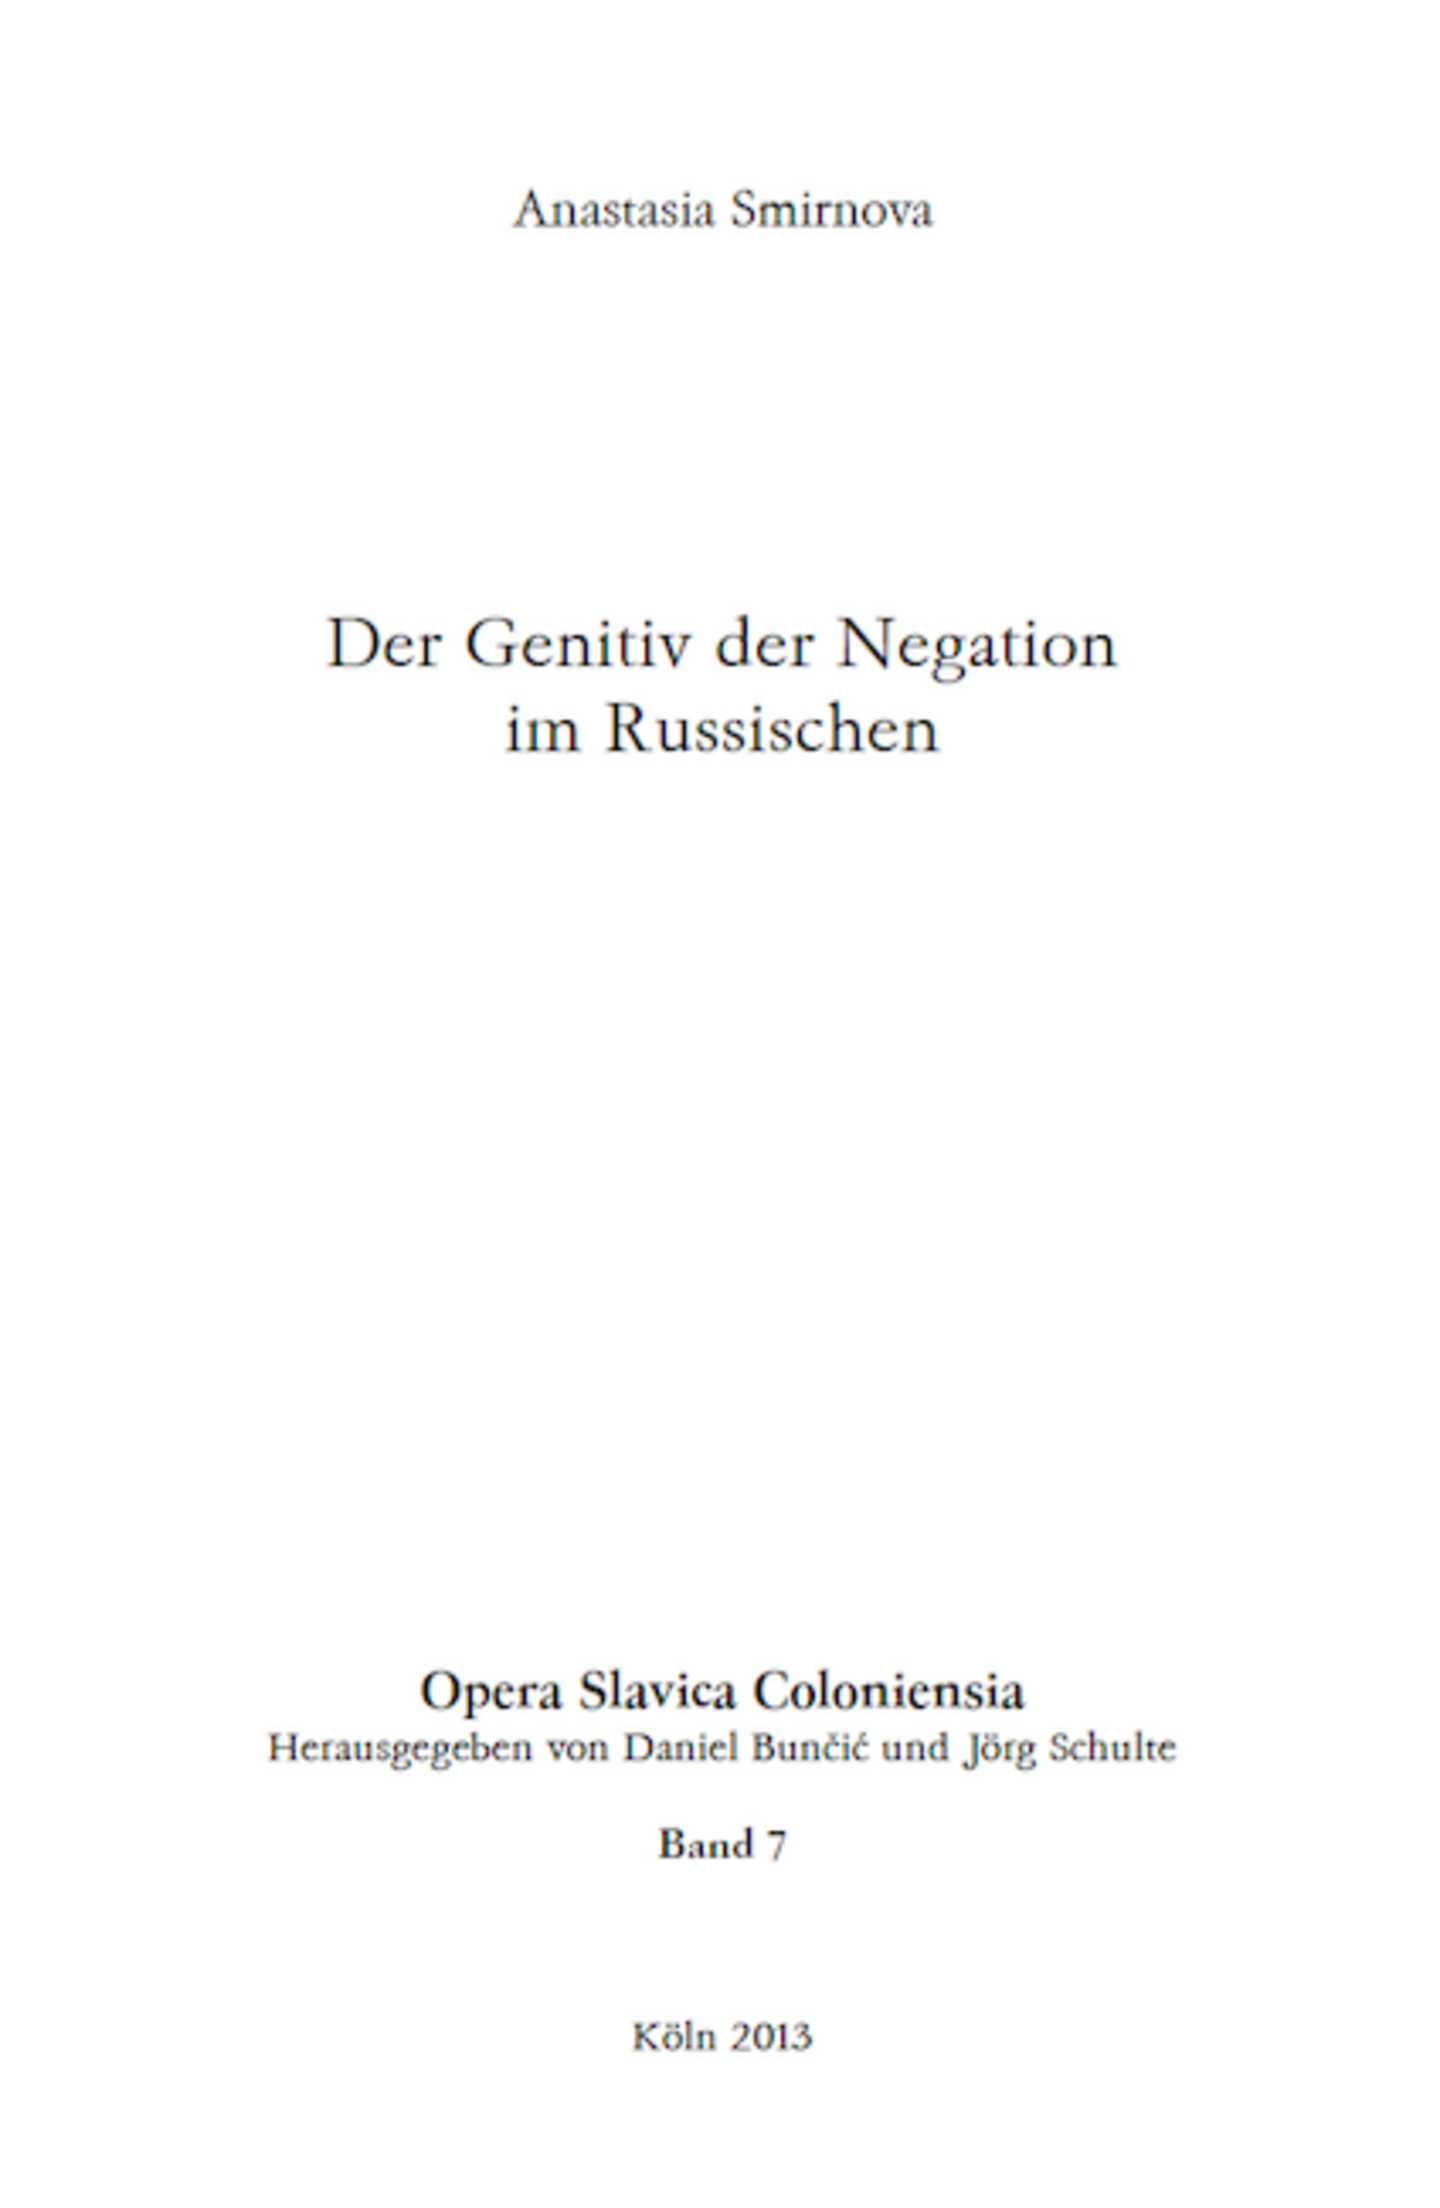 Opera Slavica Coloniensia, Bd. 7: Anastasia Smirnova (2013) Der Genitiv der Negation im Russischen